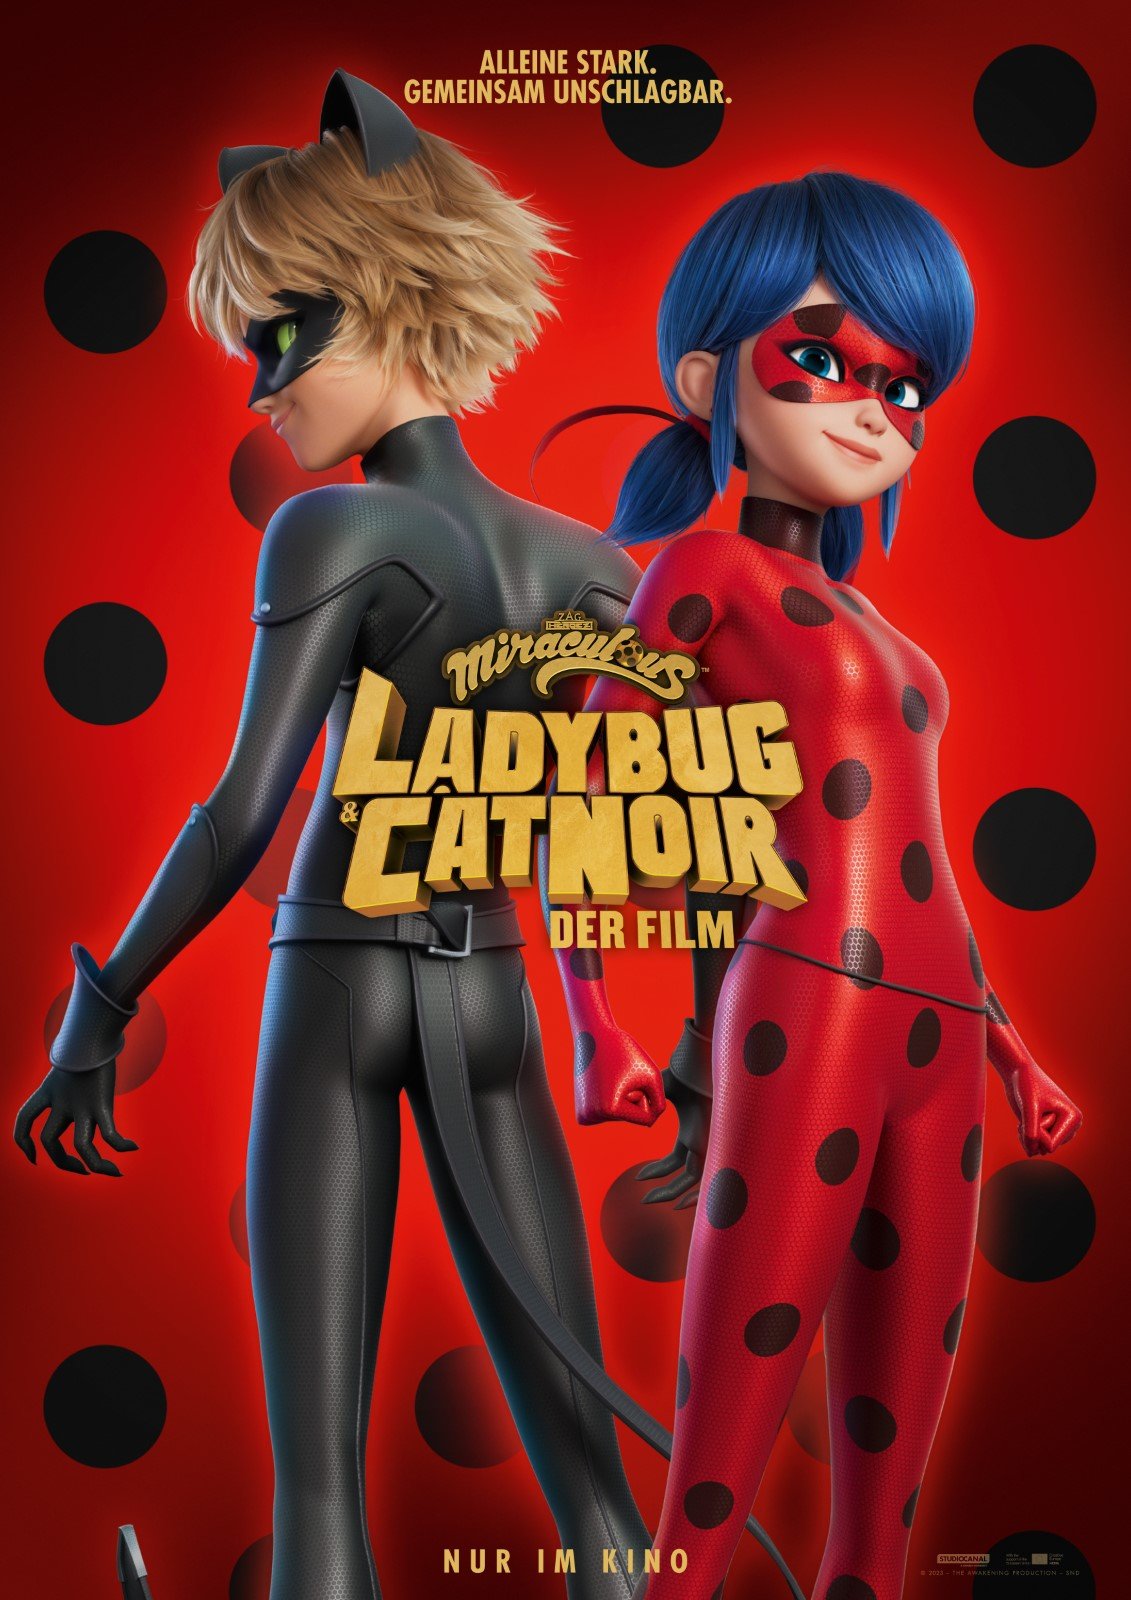 Miraculous: As Aventuras de Ladybug - Série 2015 - AdoroCinema